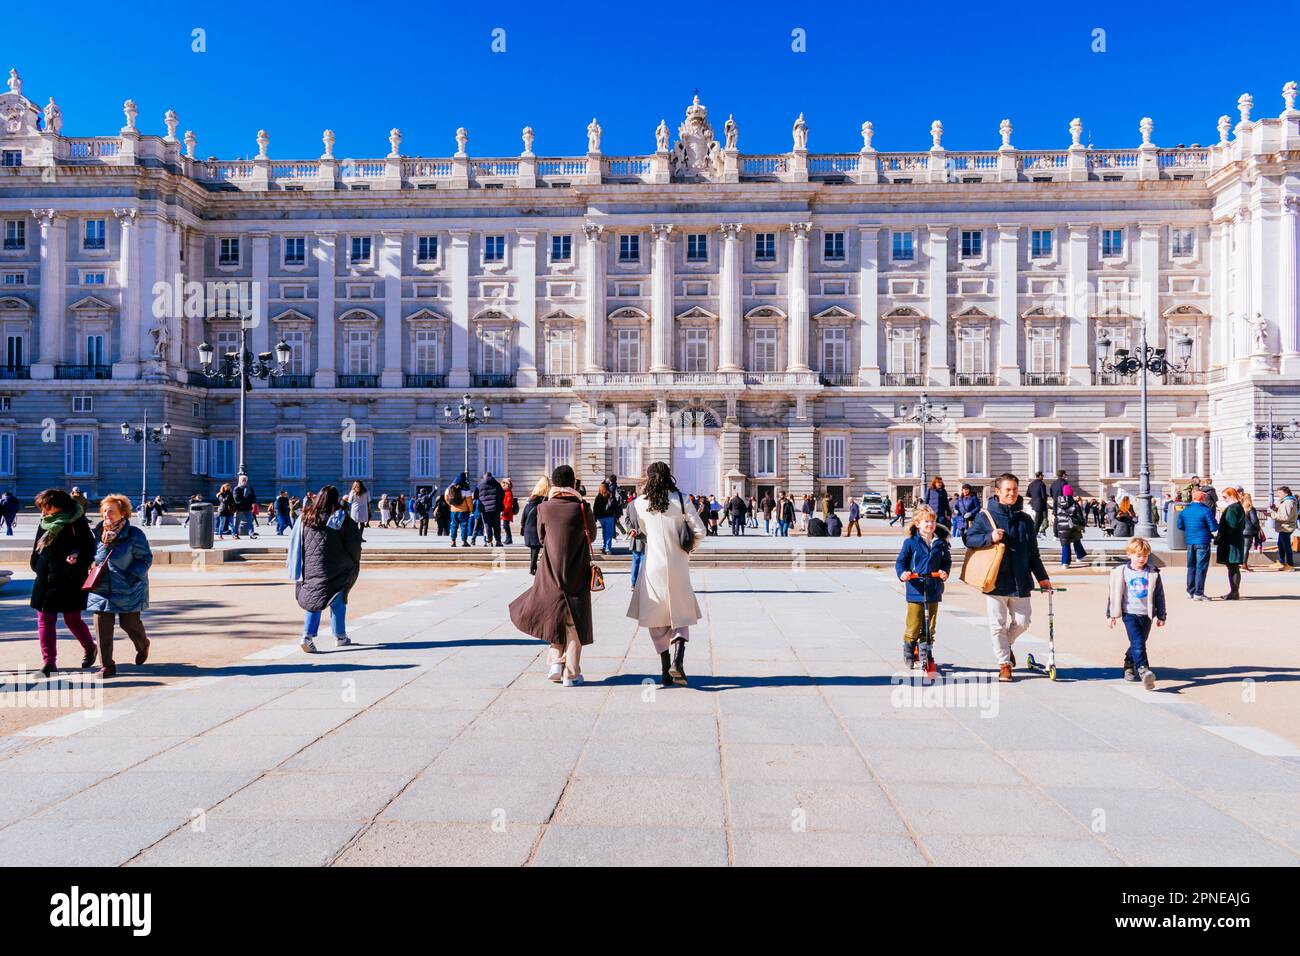 Palais royal de Madrid, façade de la rue Bailen. Résidence officielle de la famille royale espagnole dans la ville de Madrid, bien que maintenant utilisée seulement pour l'Etat c Banque D'Images